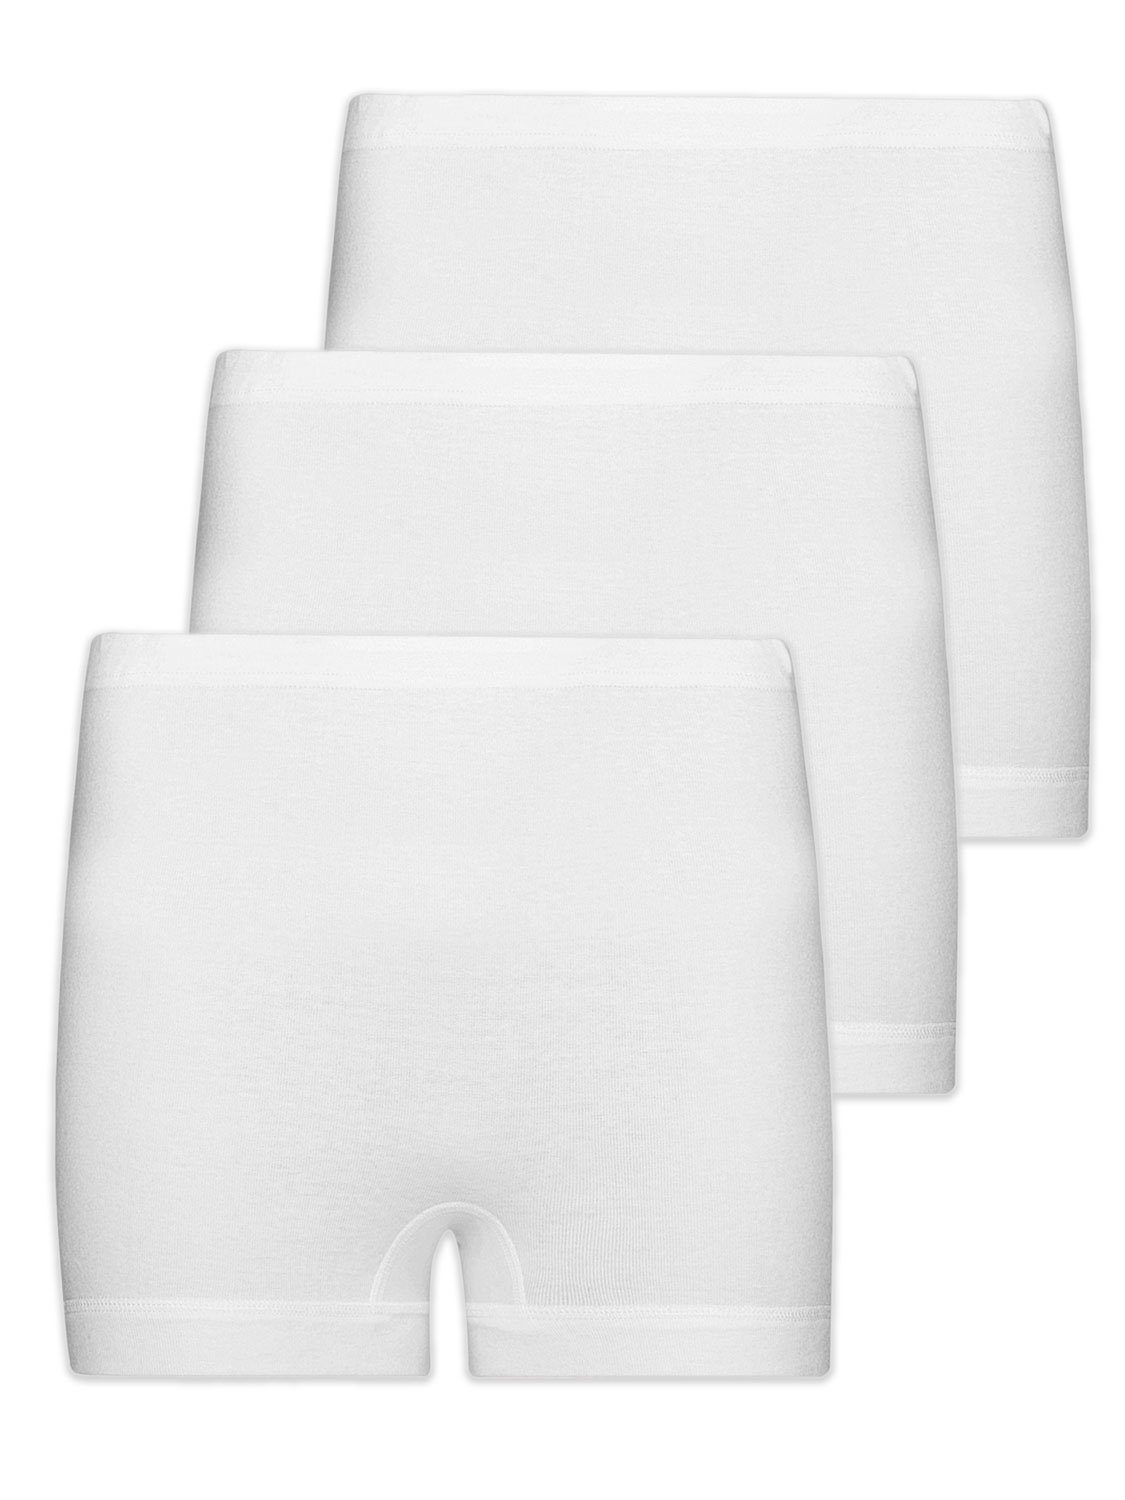 Wäsche/Bademode Unterhosen Pompadour Pagenschlüpfer Damen Pagenschlüpfer 3er Pack (3 Stück) gerader Beinausschnitt